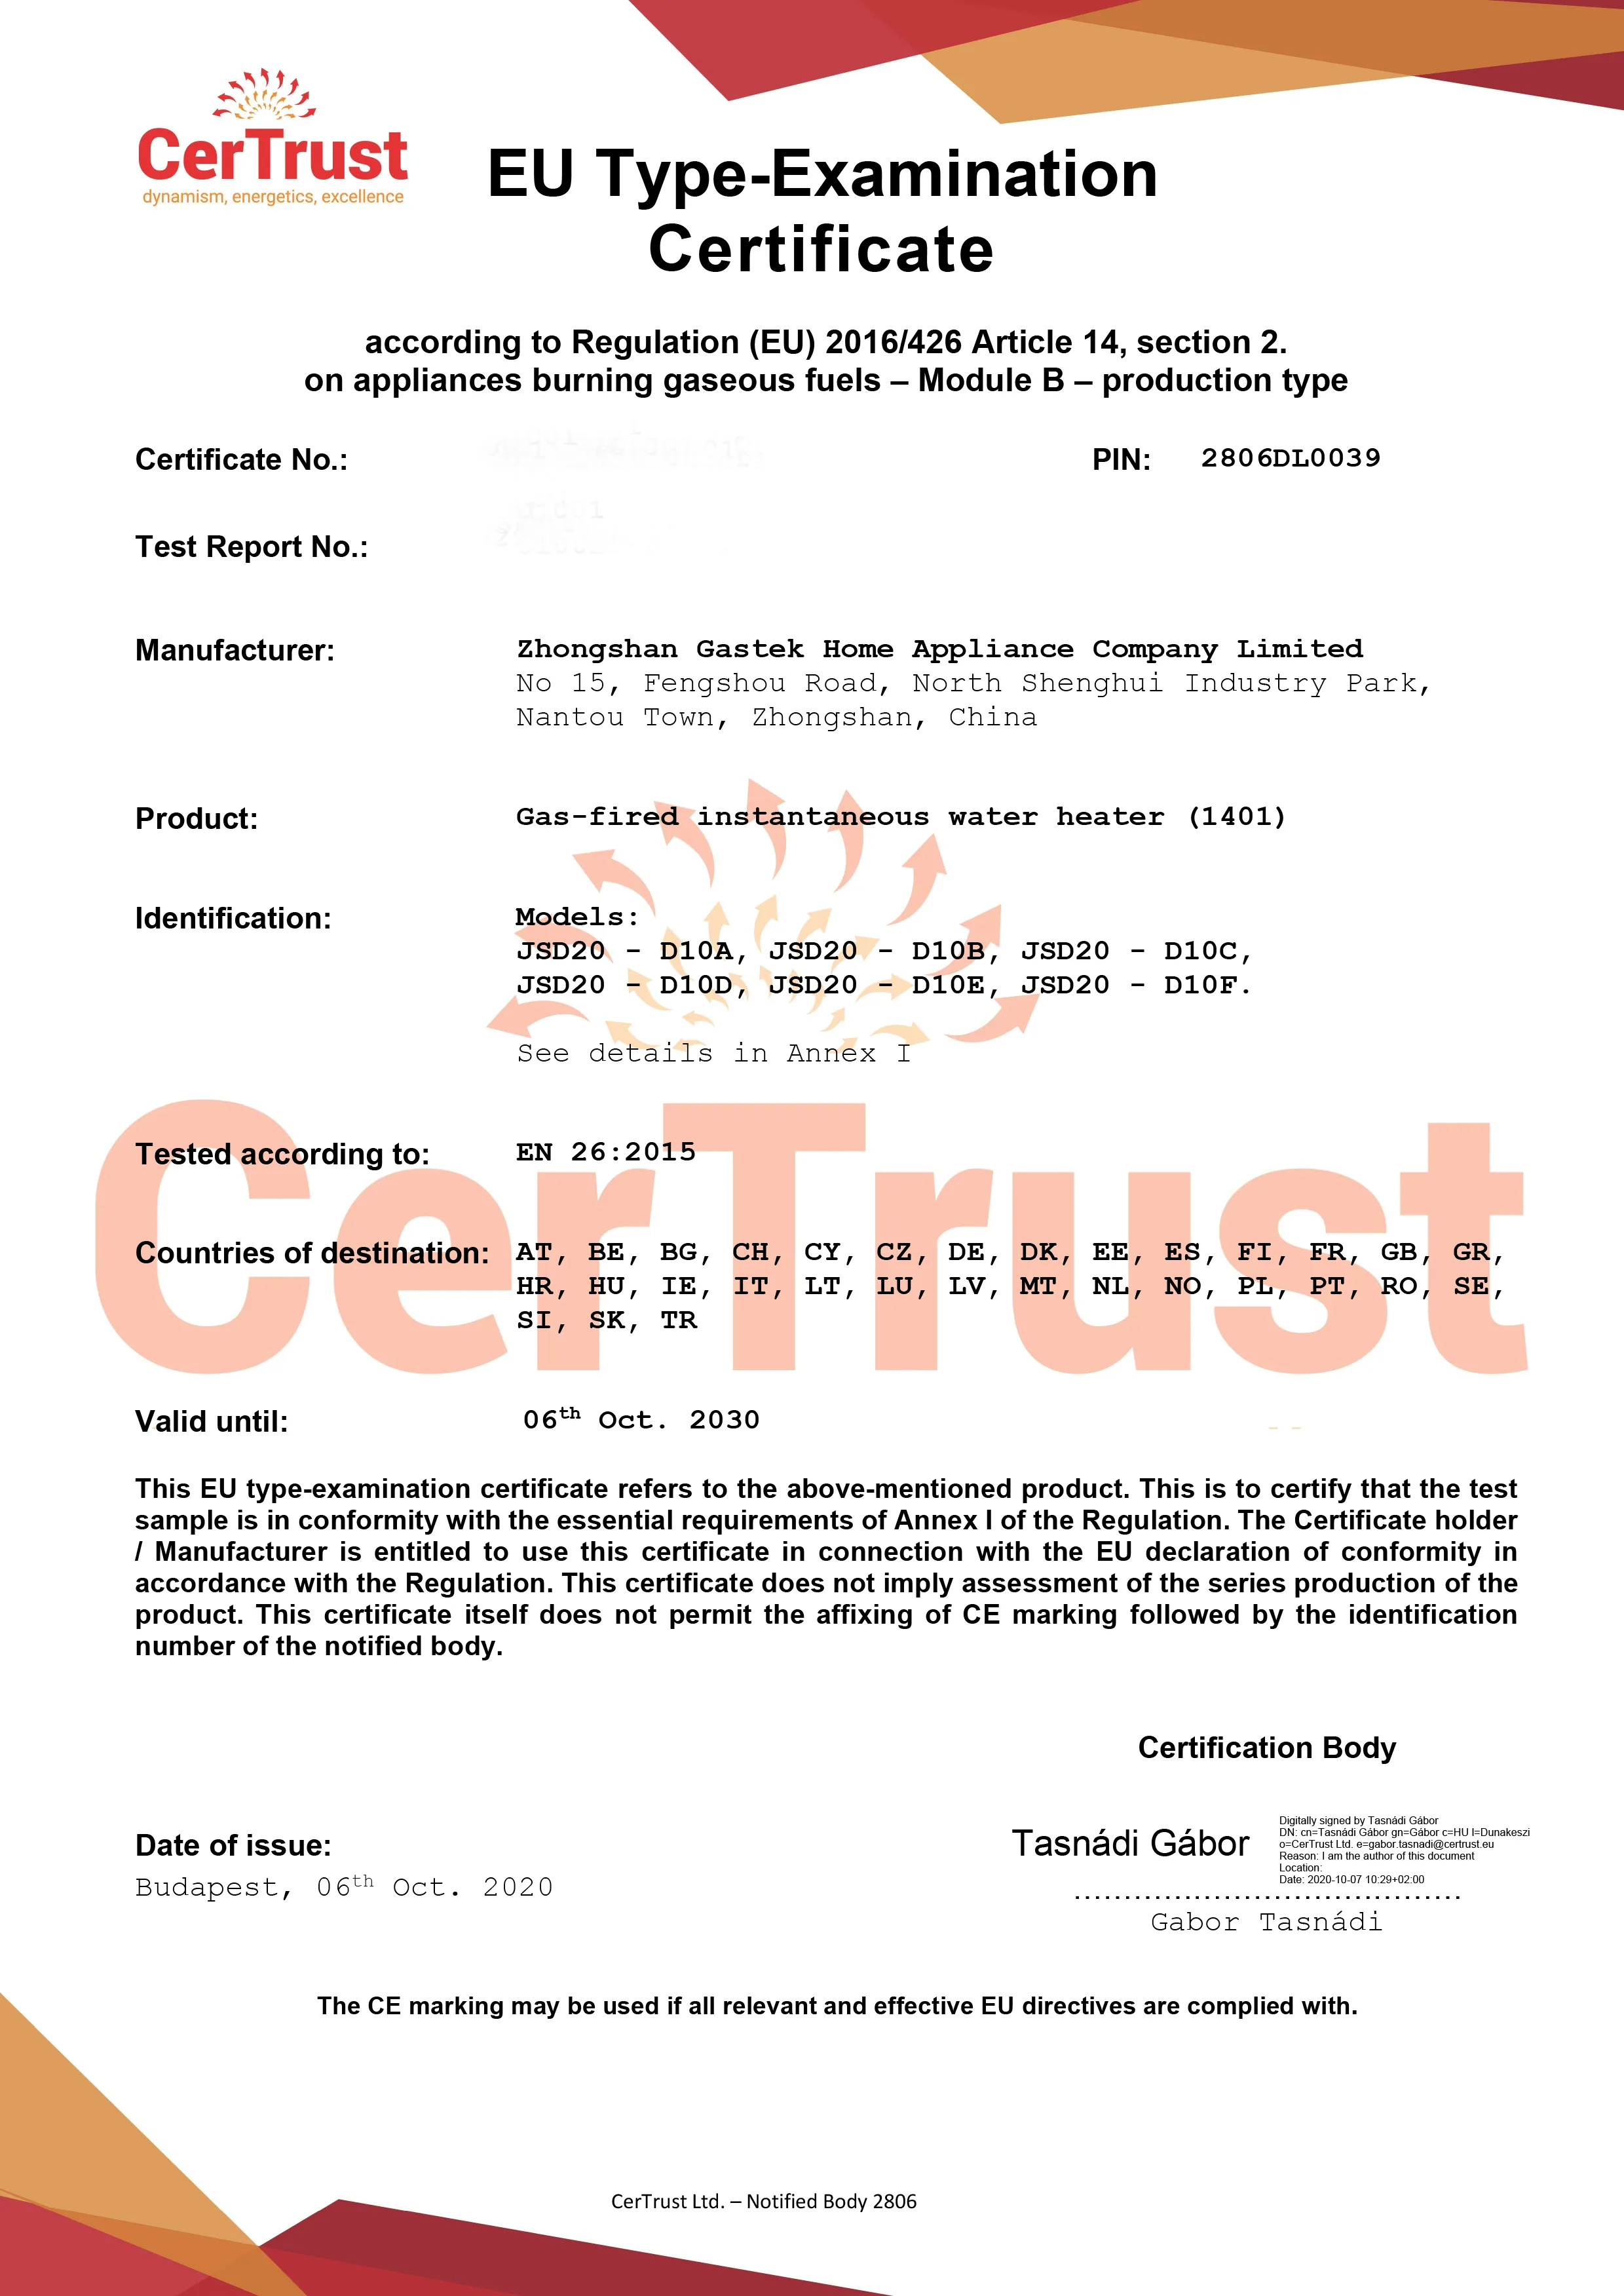 Gastek erhielt im Oktober dieses Jahres das CE-Zertifikat für Gaswarmwasserbereiter